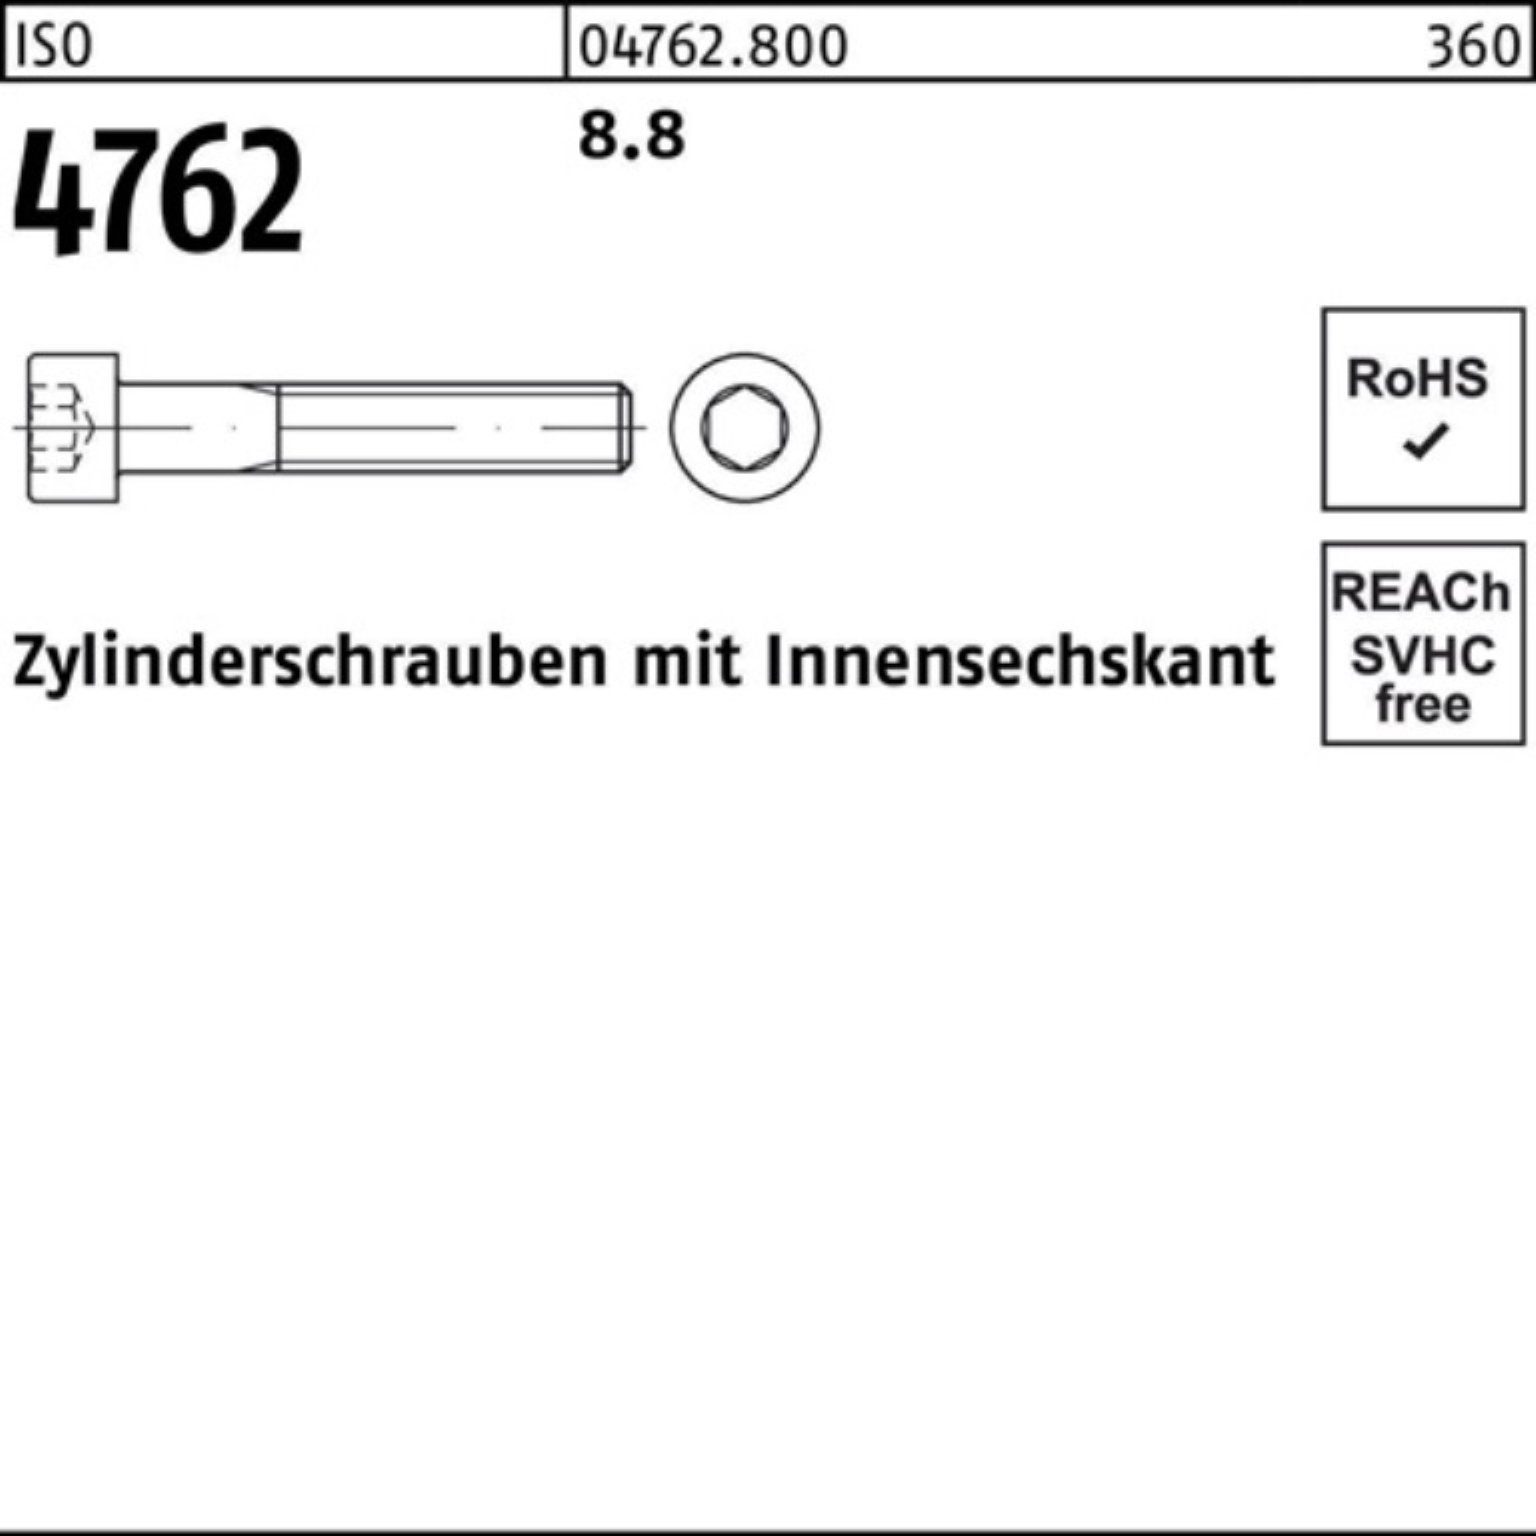 Innen-6kt Stück Zylinderschraube Pack 1 100er 4762 M20x 8.8 I Reyher Zylinderschraube ISO 260